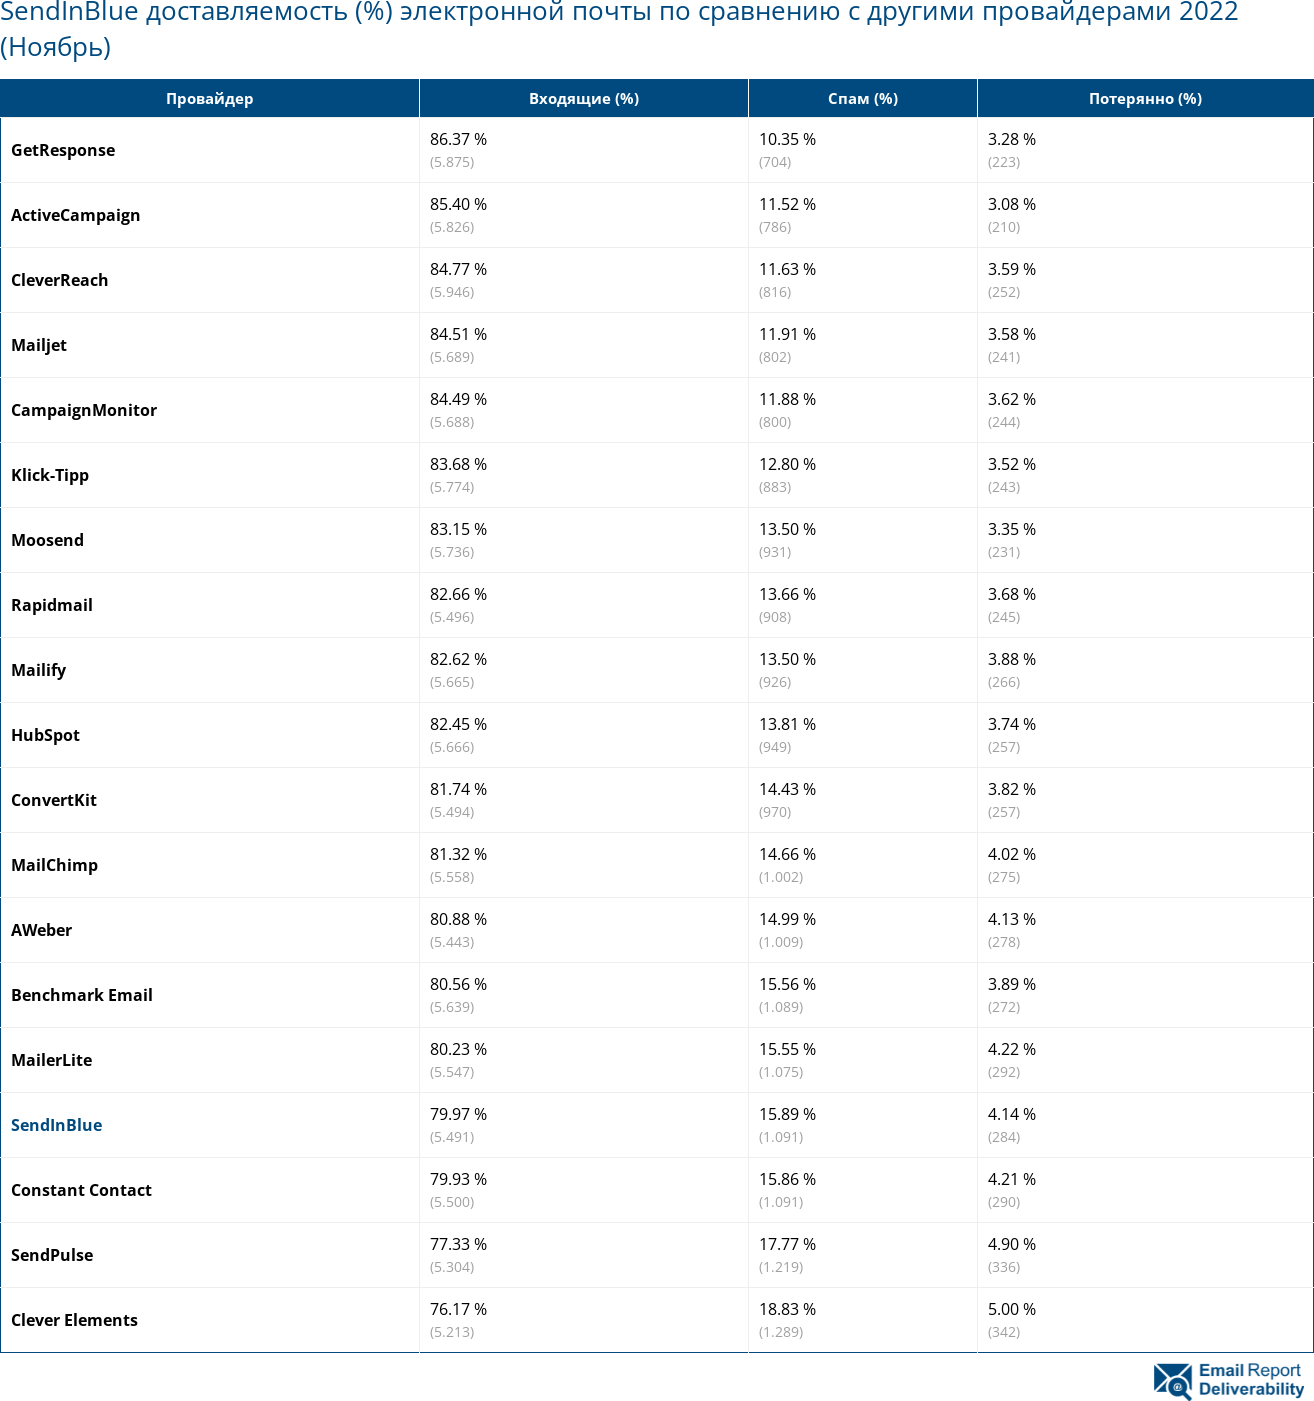 SendInBlue доставляемость (%) электронной почты по сравнению с другими провайдерами 2022 (Ноябрь)